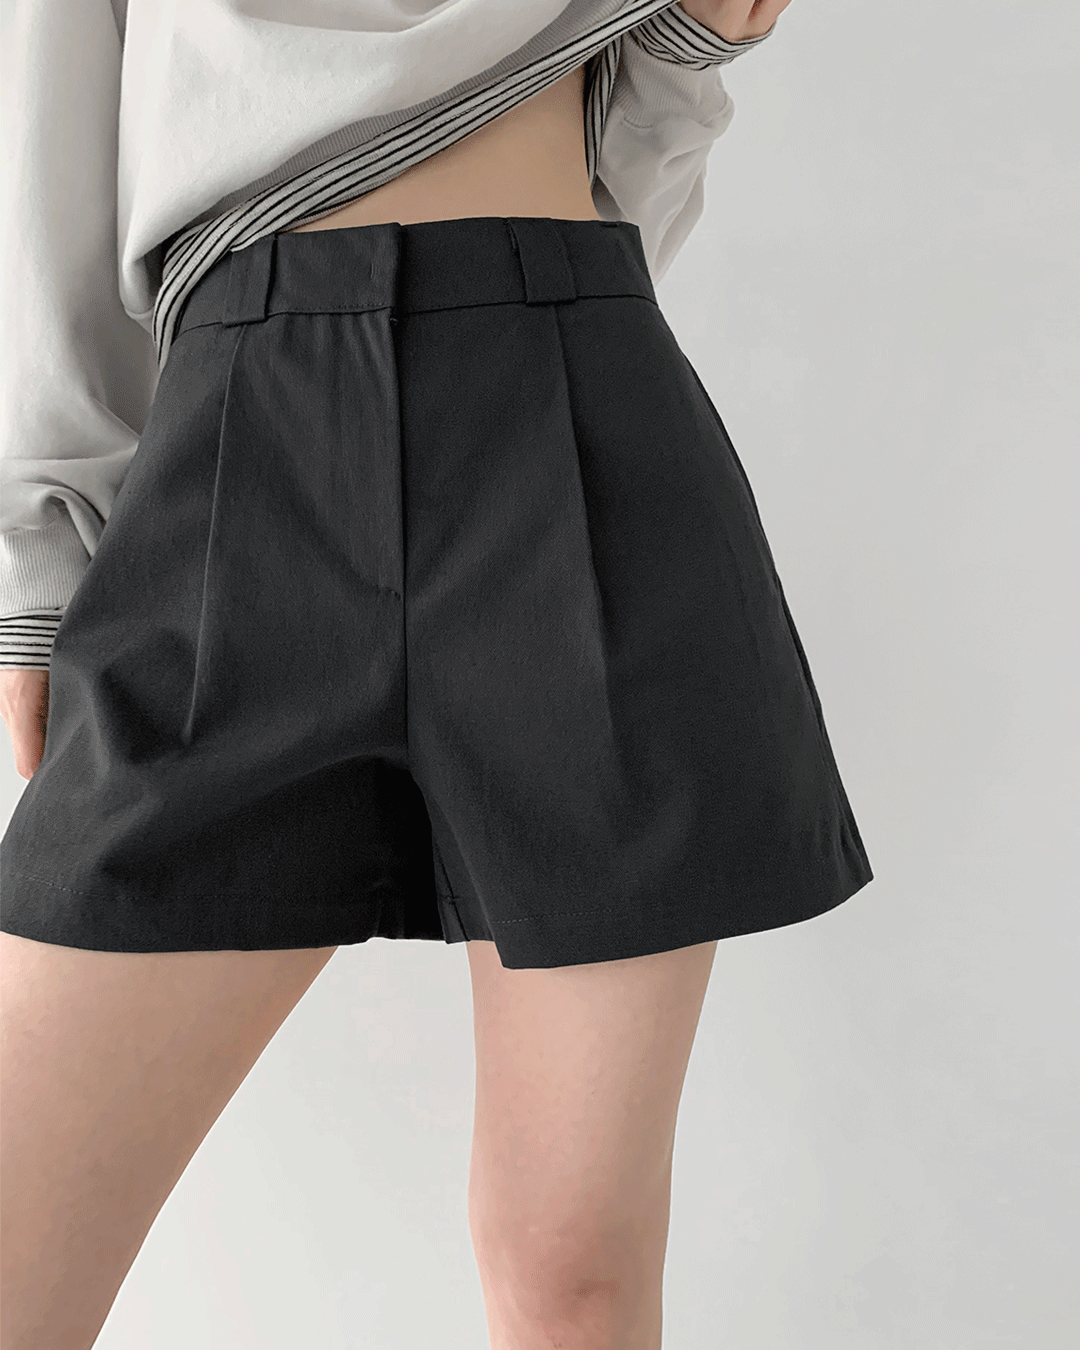 Take shorts